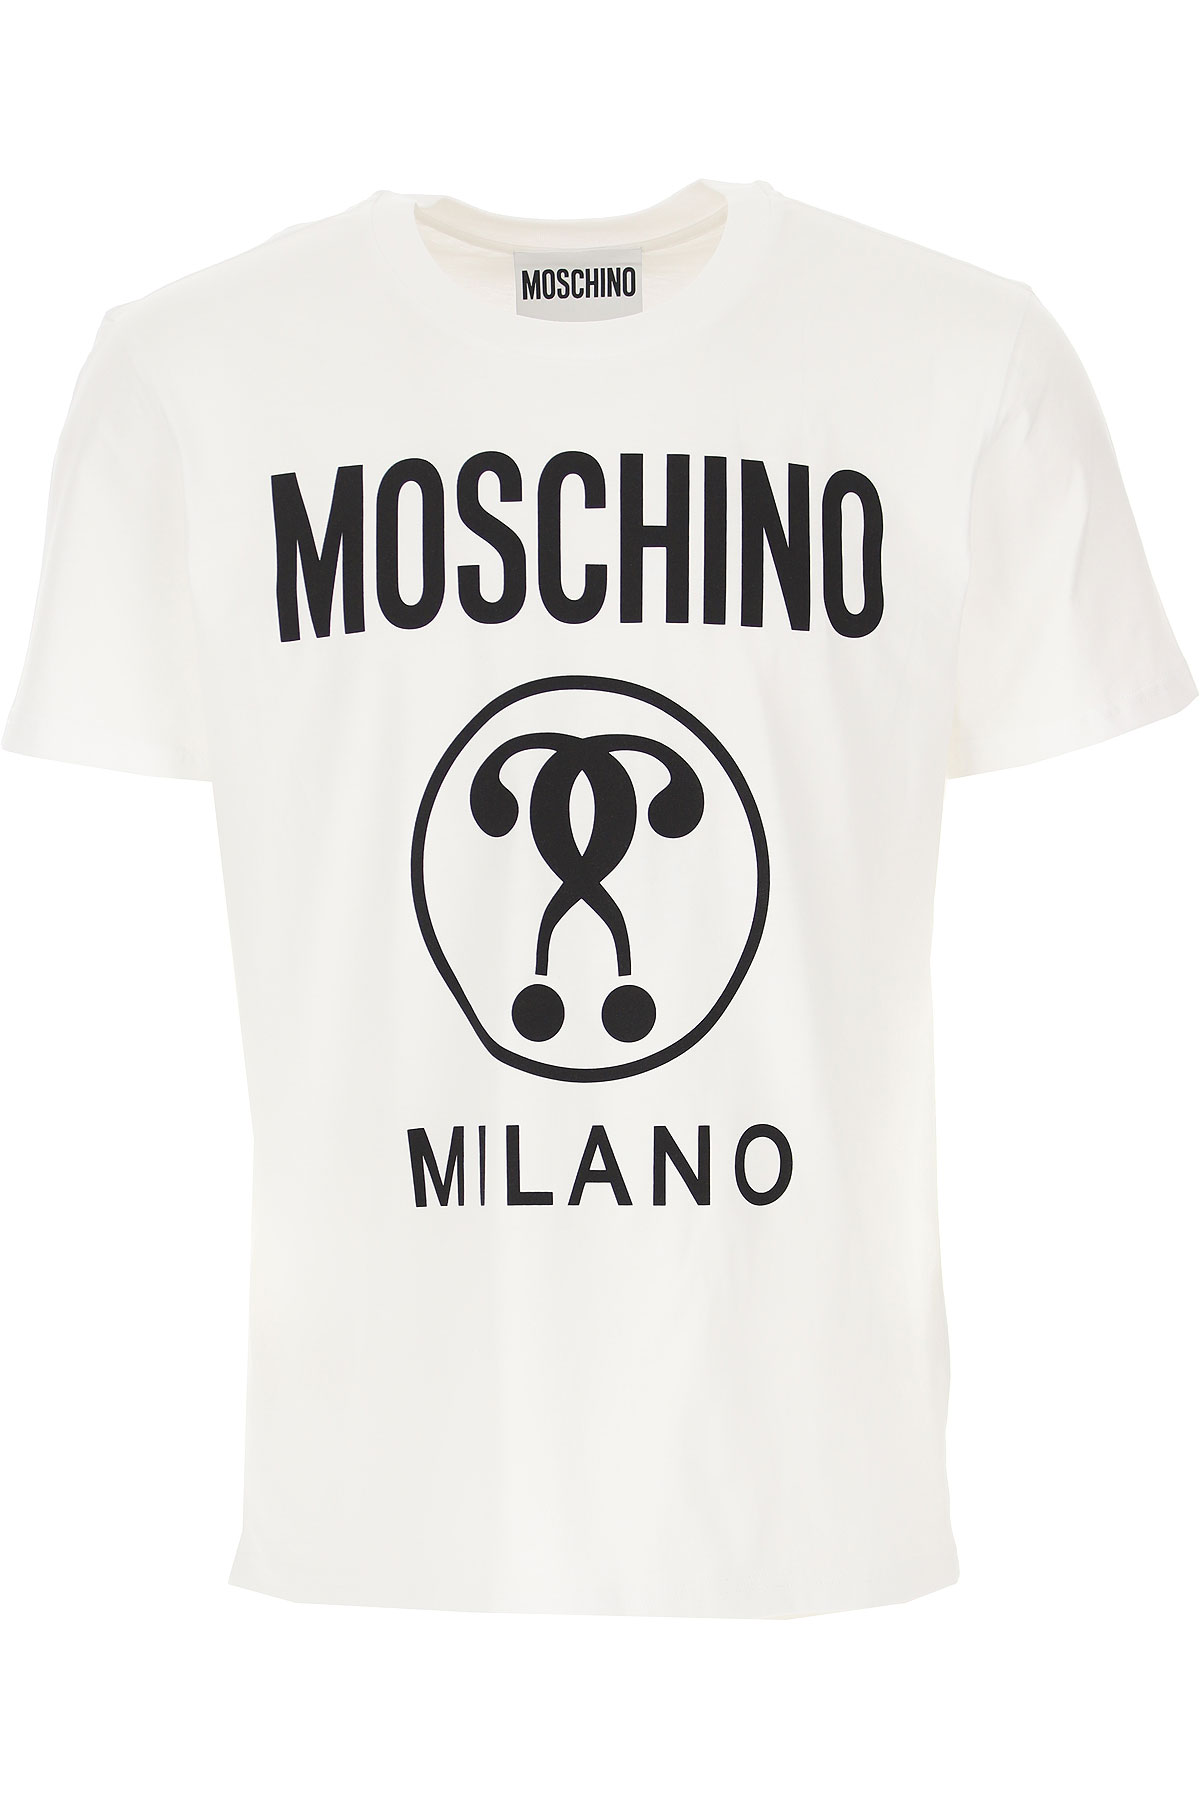 moschino 2019 t shirt